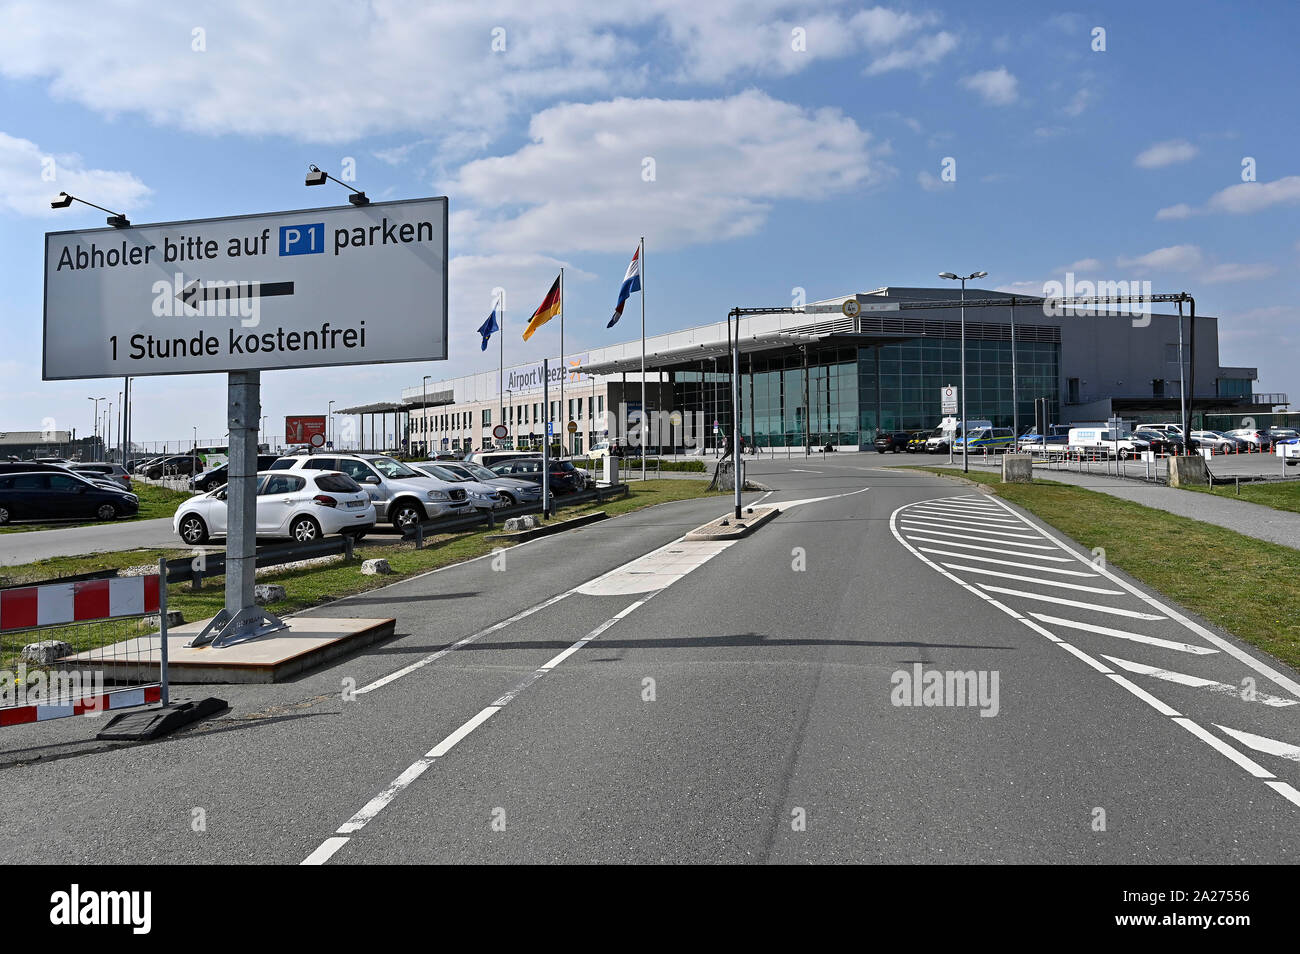 11.04.2019, Weeze, Renania settentrionale-Vestfalia, Germania - Aeroporto di Weeze, il quale è utilizzato il 90 percento circa dalla compagnia aerea irlandese Ryanair che lo chiama Duesse Foto Stock